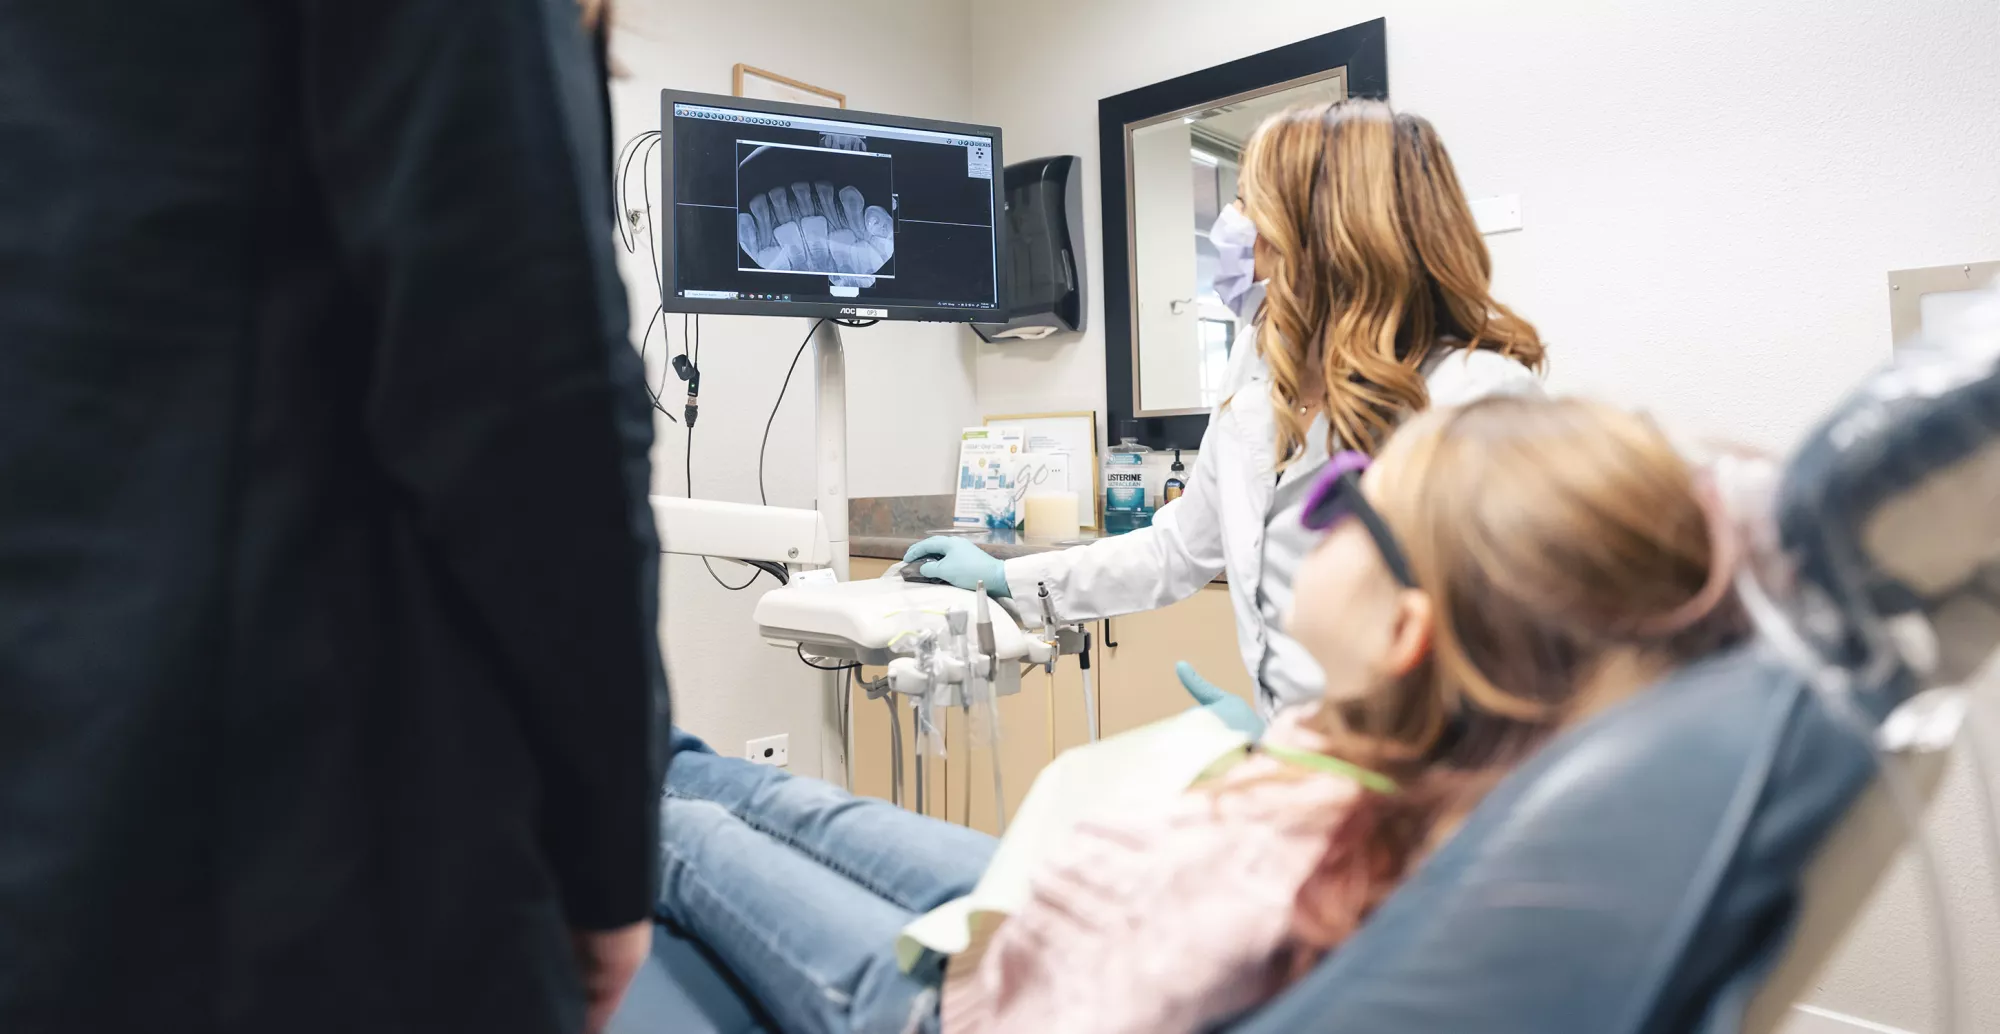 Examining dental x-ray